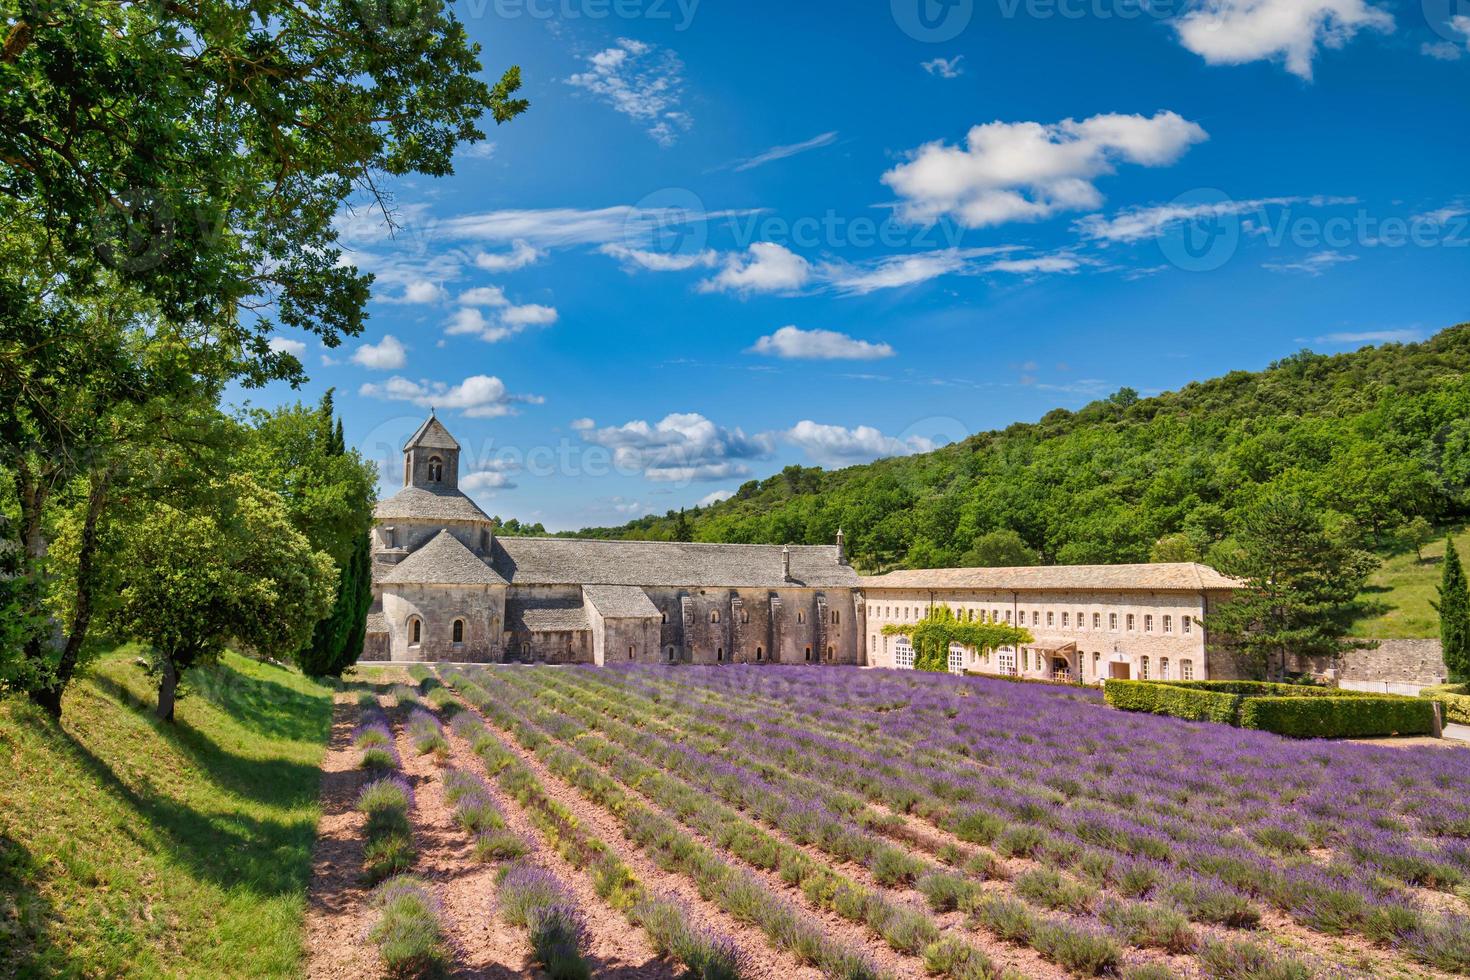 pittoreske reizen landschap, idyllisch zonnig bestemming toneel. de romaans cisterciënzer abdij van notre lady van senanque reeks te midden van bloeiend lavendel velden, in de buurt godes, Provence, Frankrijk foto